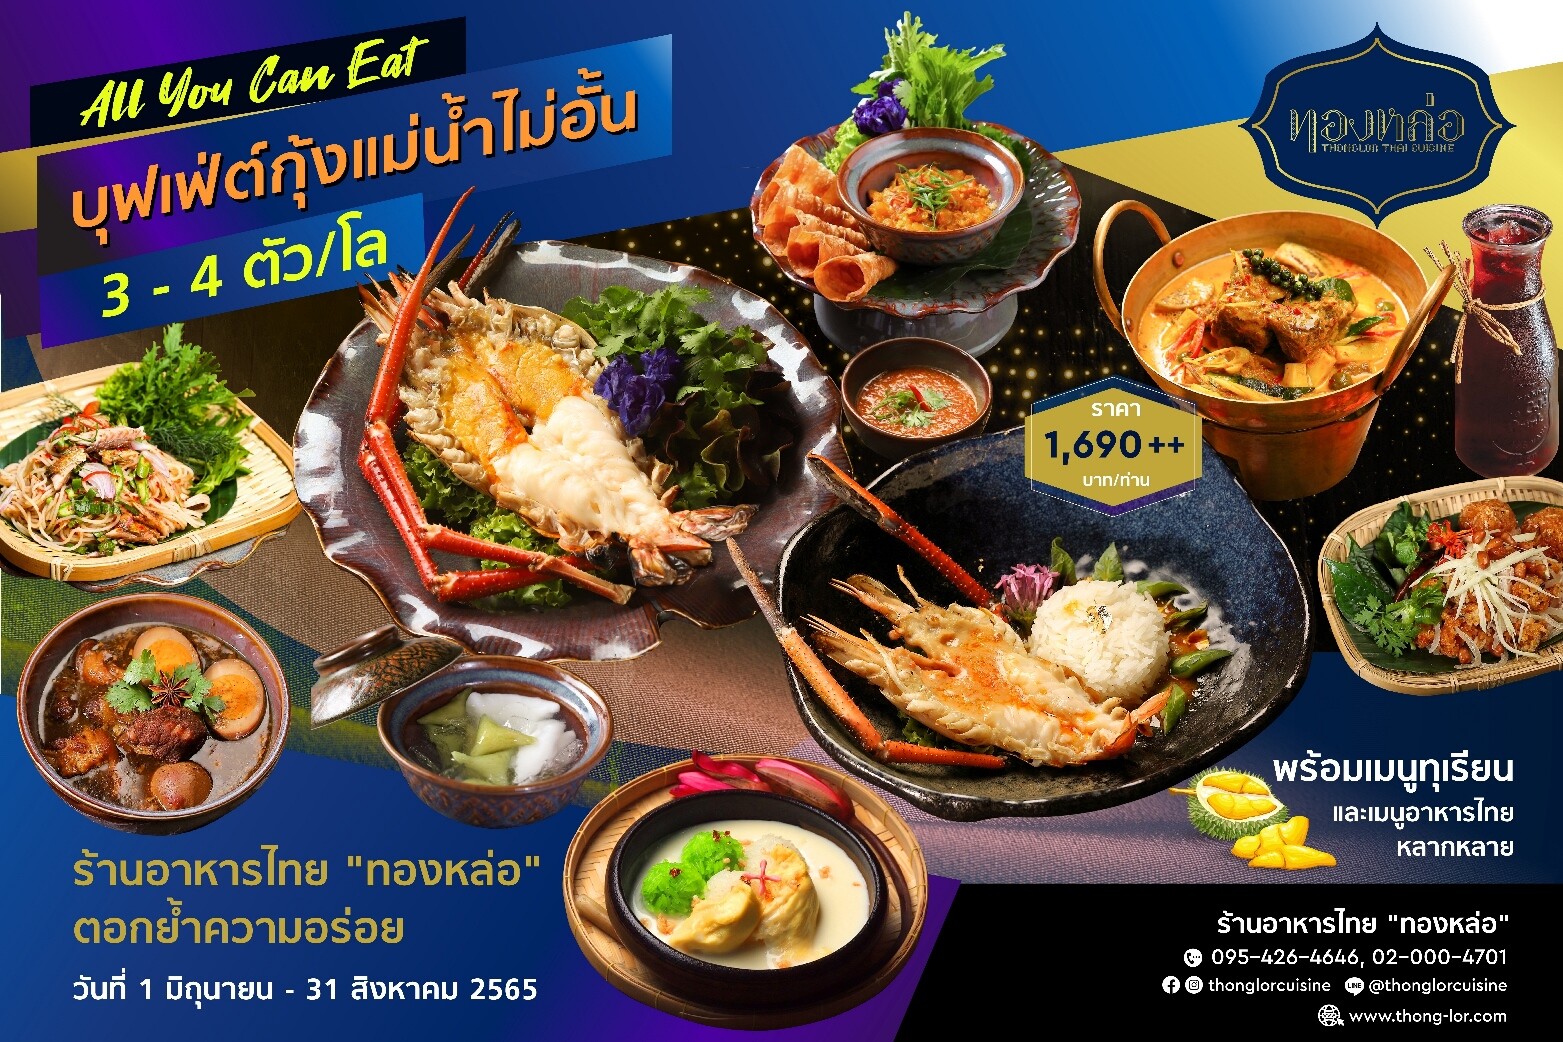 ร้านอาหารไทย "ทองหล่อ" ตอกย้ำความเป็นหนึ่งบุฟเฟ่ต์อาหารไทย มอบโปรโมชั่นมา 4 จ่าย 3 พร้อมอร่อยกับ 15 เมนูใหม่ ทั้งกุ้งแม่น้ำไซส์ใหญ่ เมนูจากทุเรียน และเมนูอาหารไทย 4 ภาค หลากหลายกว่า 30เมนู